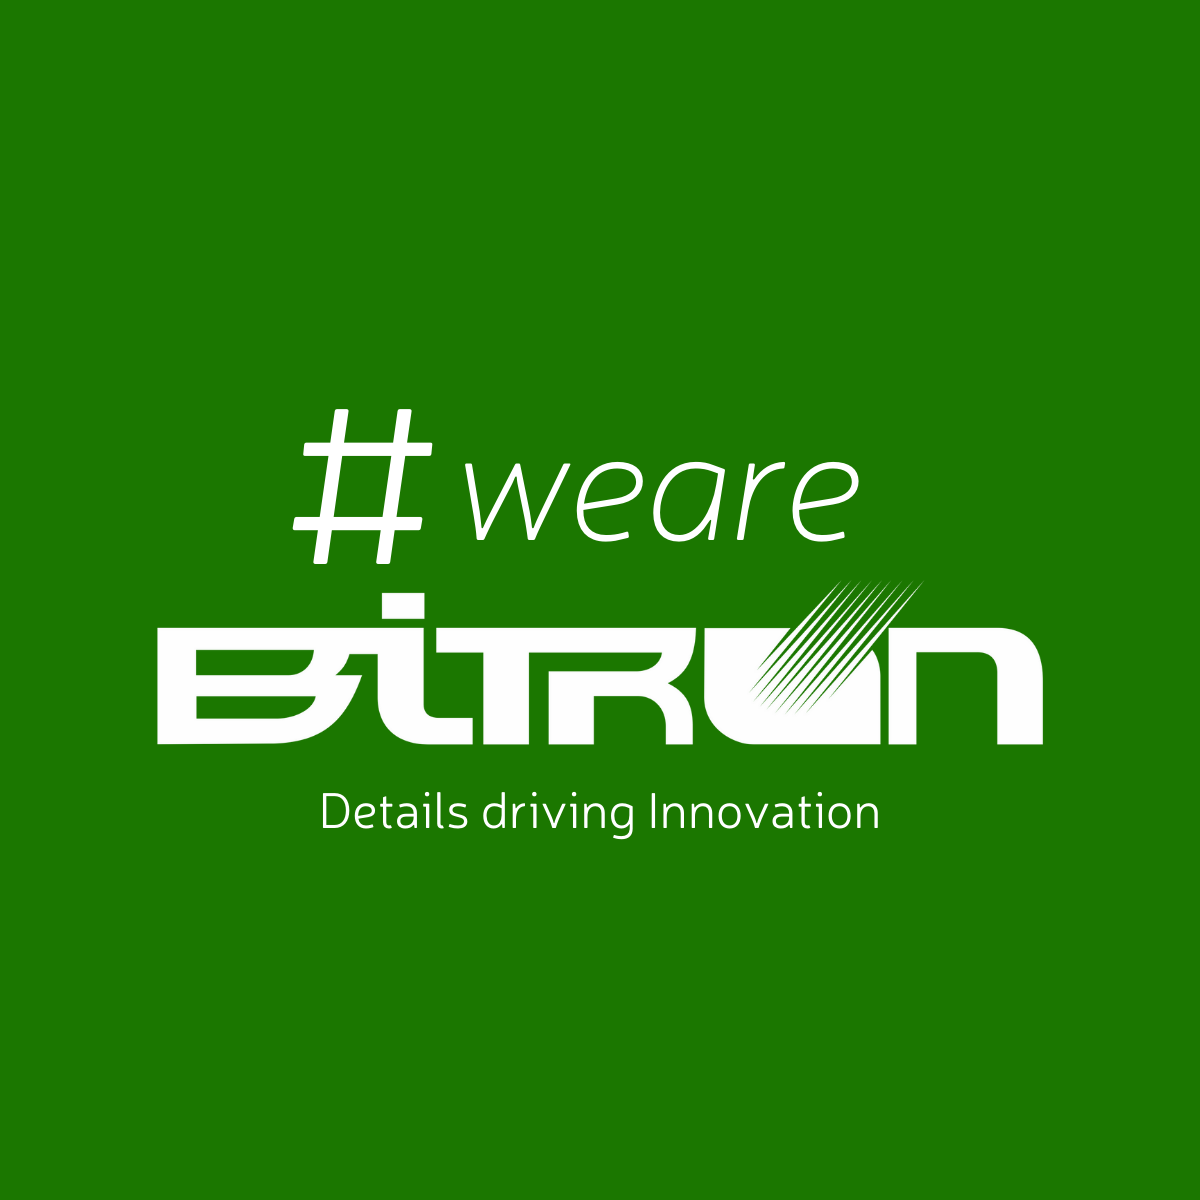 Bitron Electronics Sustainability Policy